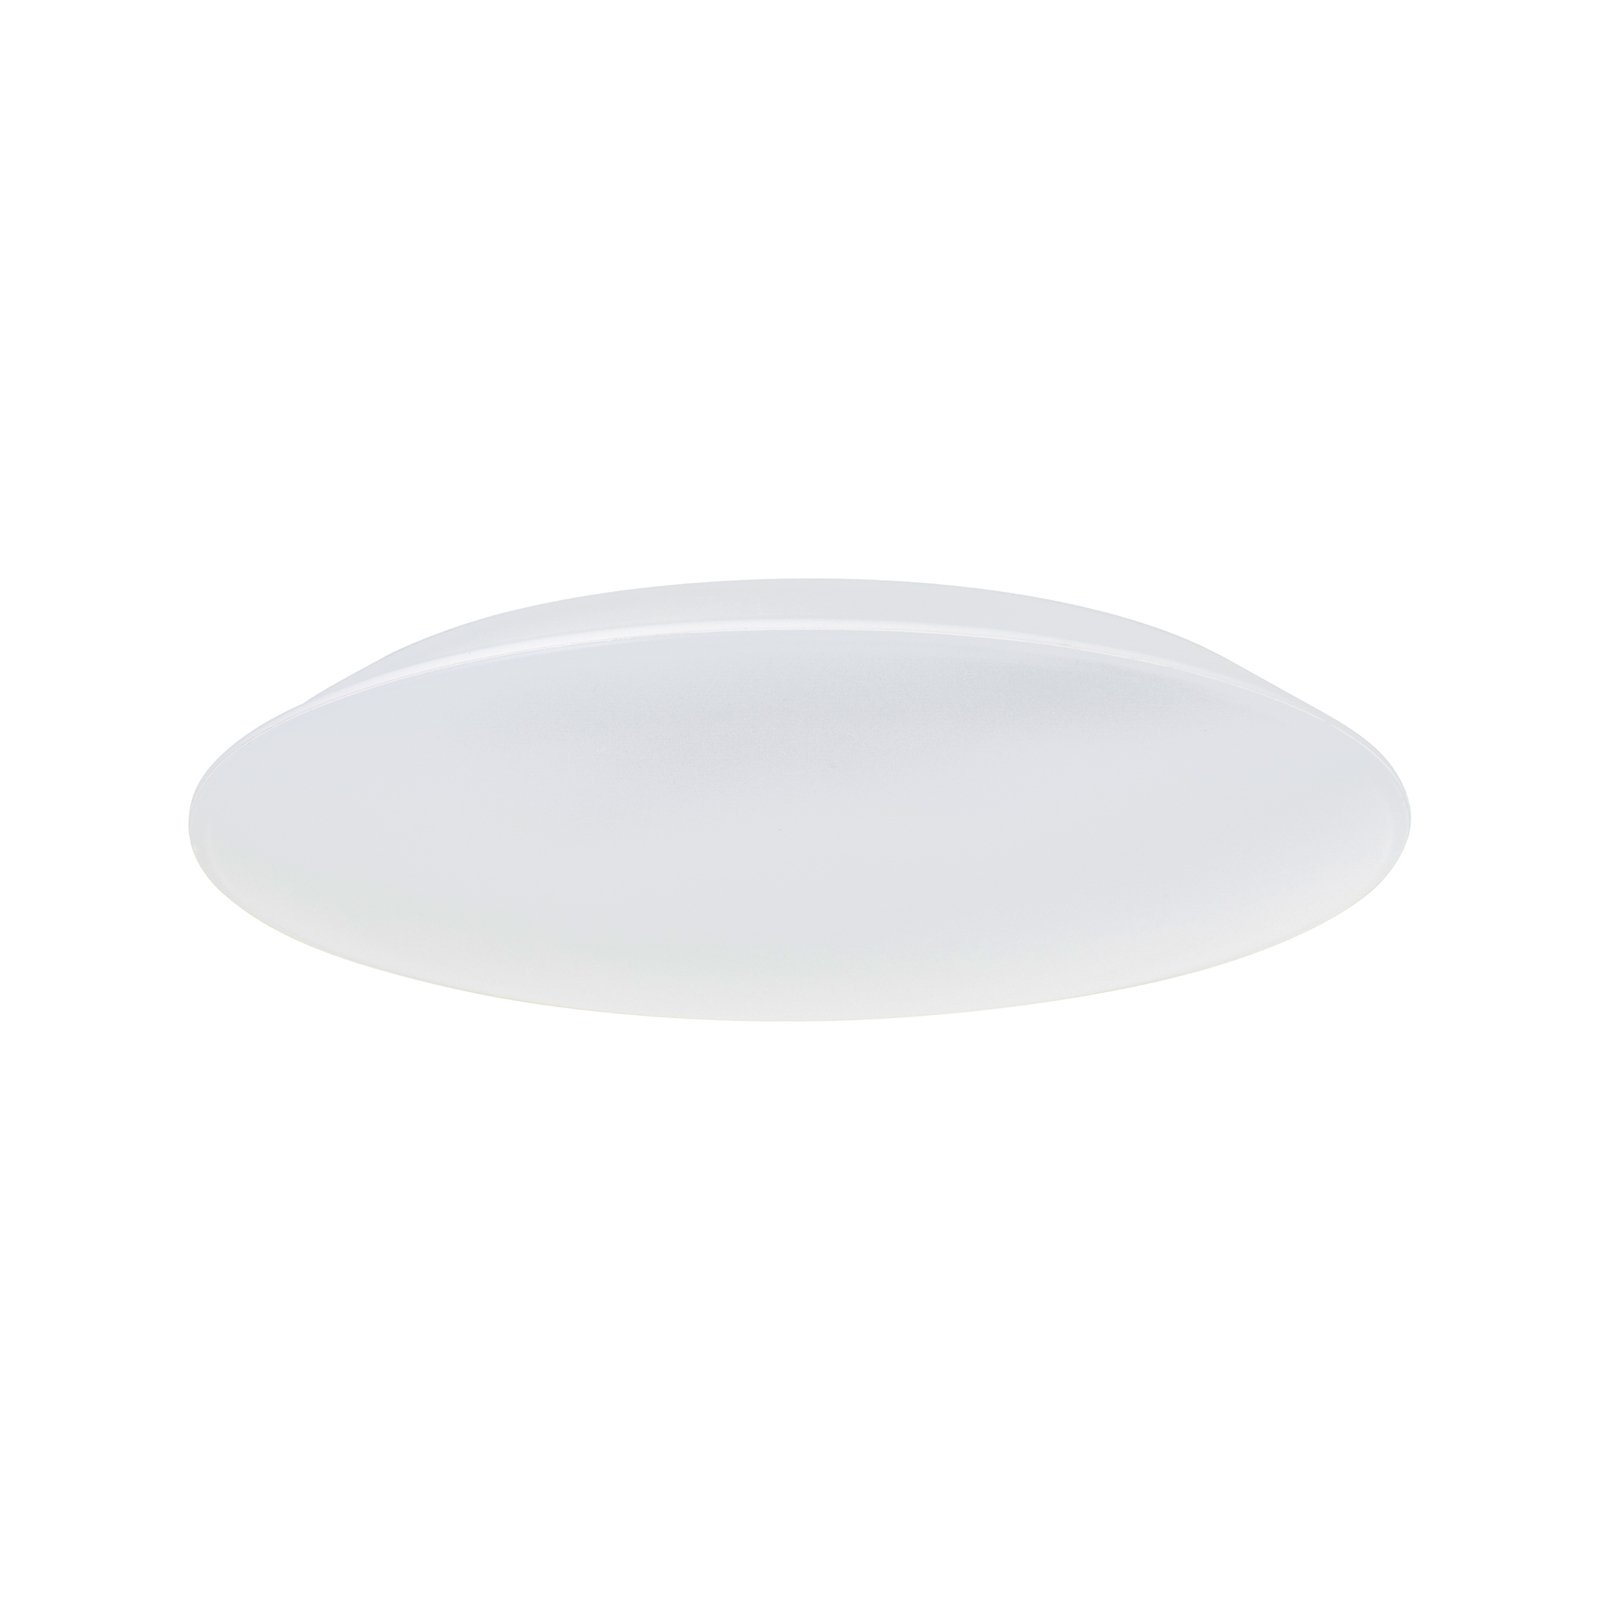 Colden LED bathroom ceiling light white, Ø 29 cm